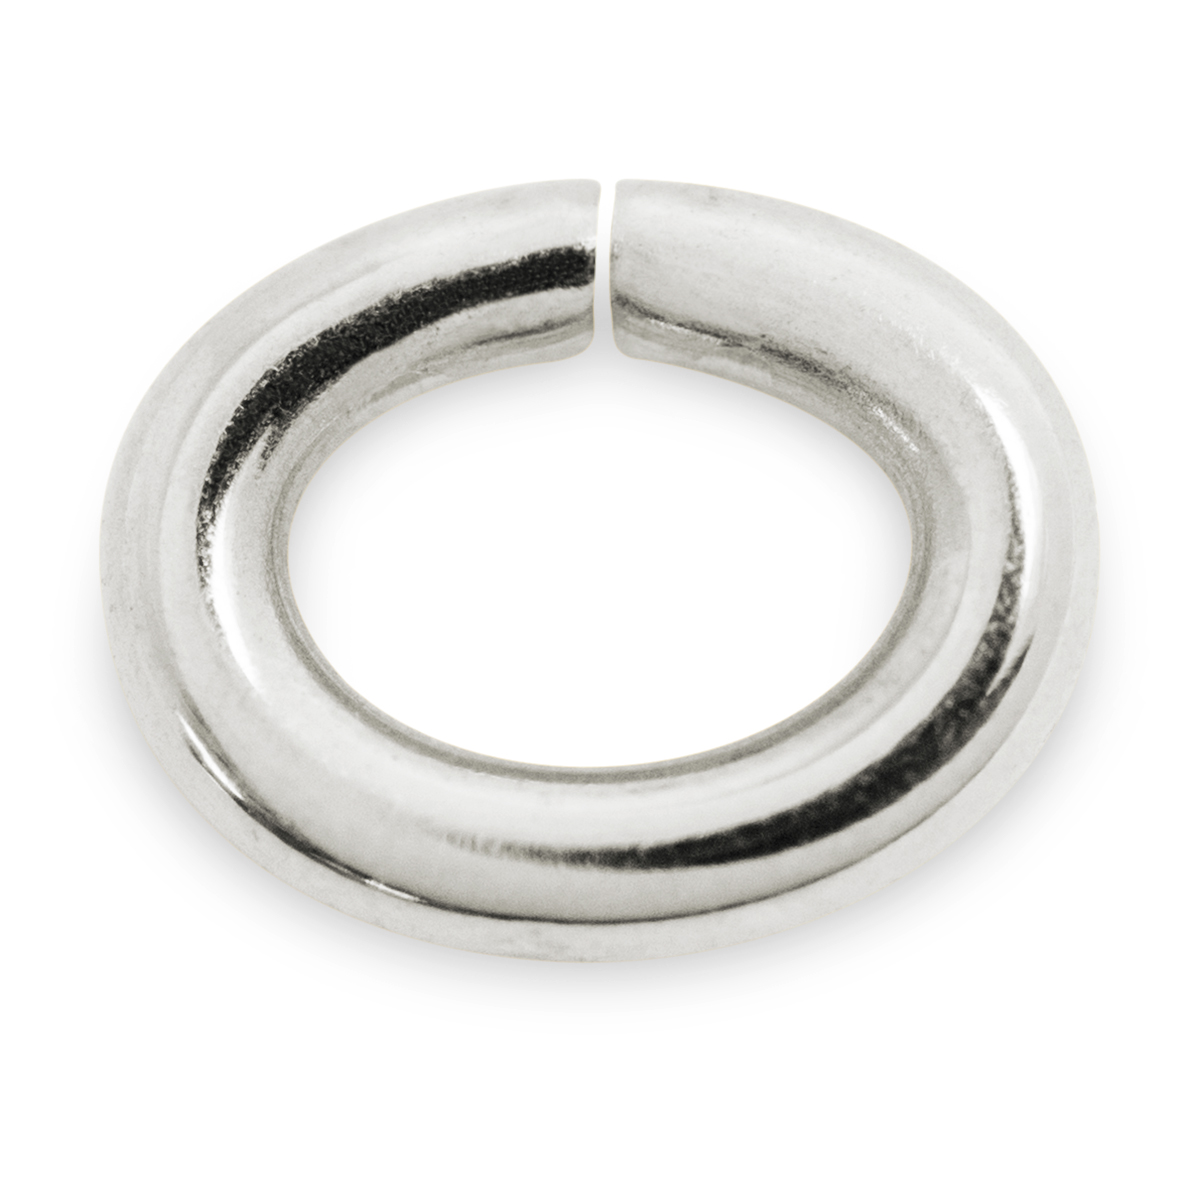 Binderinge, oval, 925/- Silber, Ø 4 mm, Stärke 0,8 mm